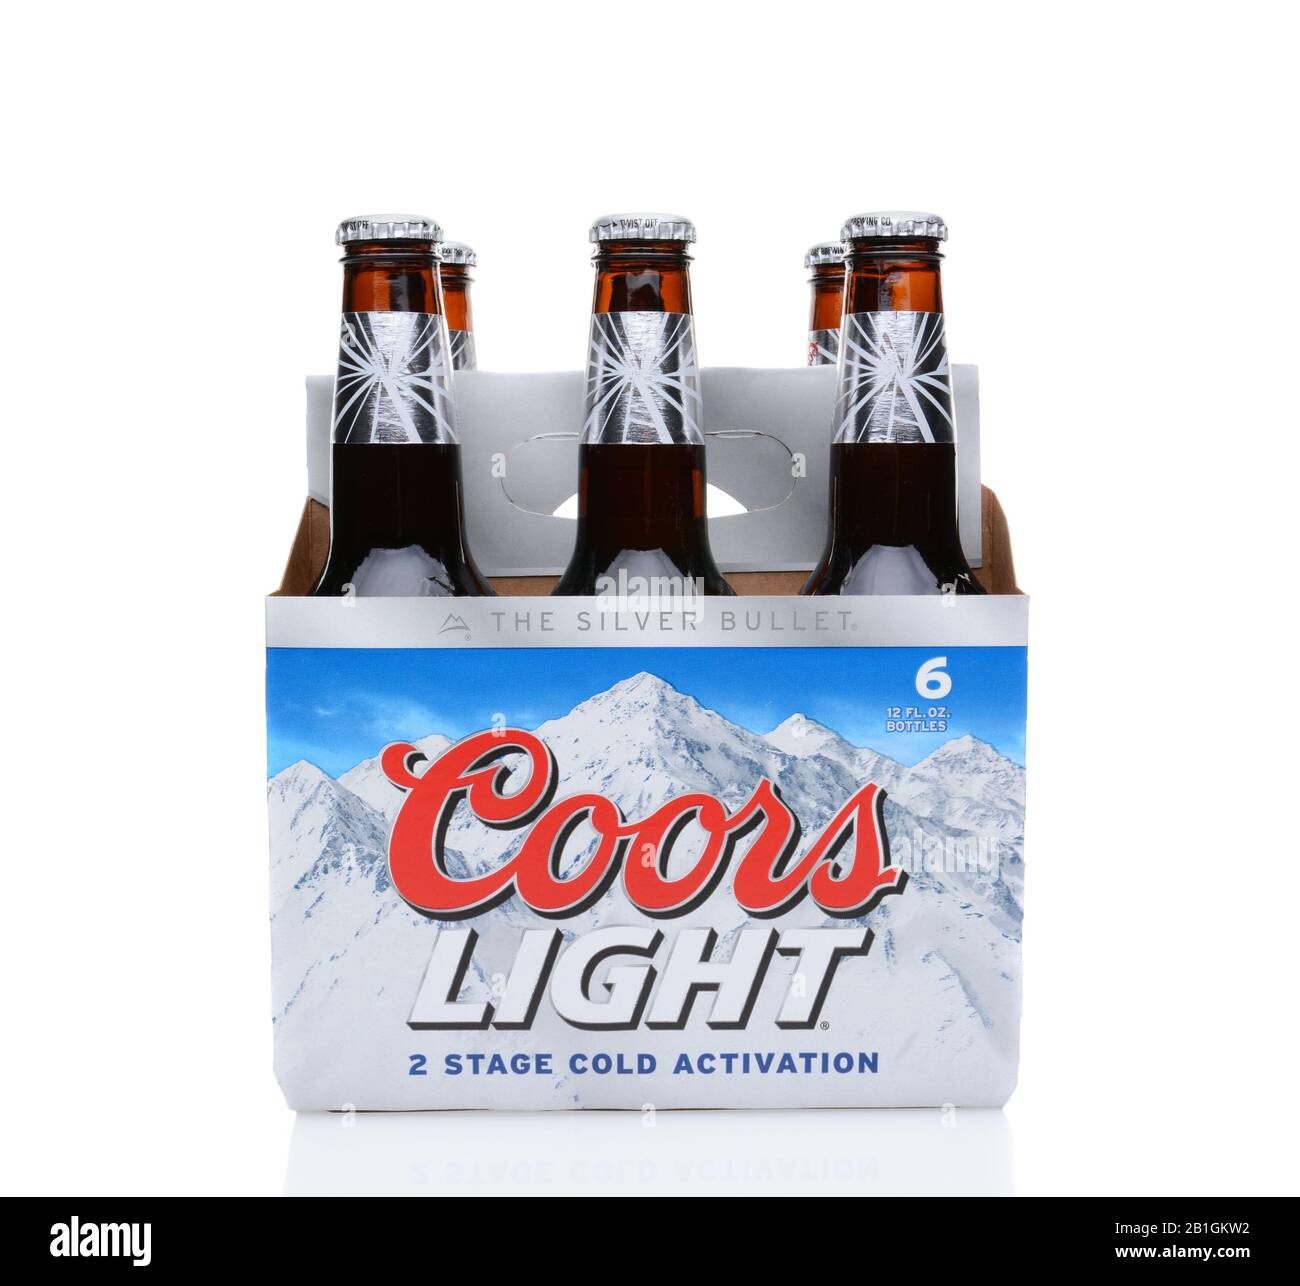 Irvine, CA - 25 DE MAYO de 2014: Un paquete de 6 cervezas ligeras Coors. Coors opera una fábrica de cerveza en Golden, Colorado, que es la fábrica de cerveza más grande en Foto de stock